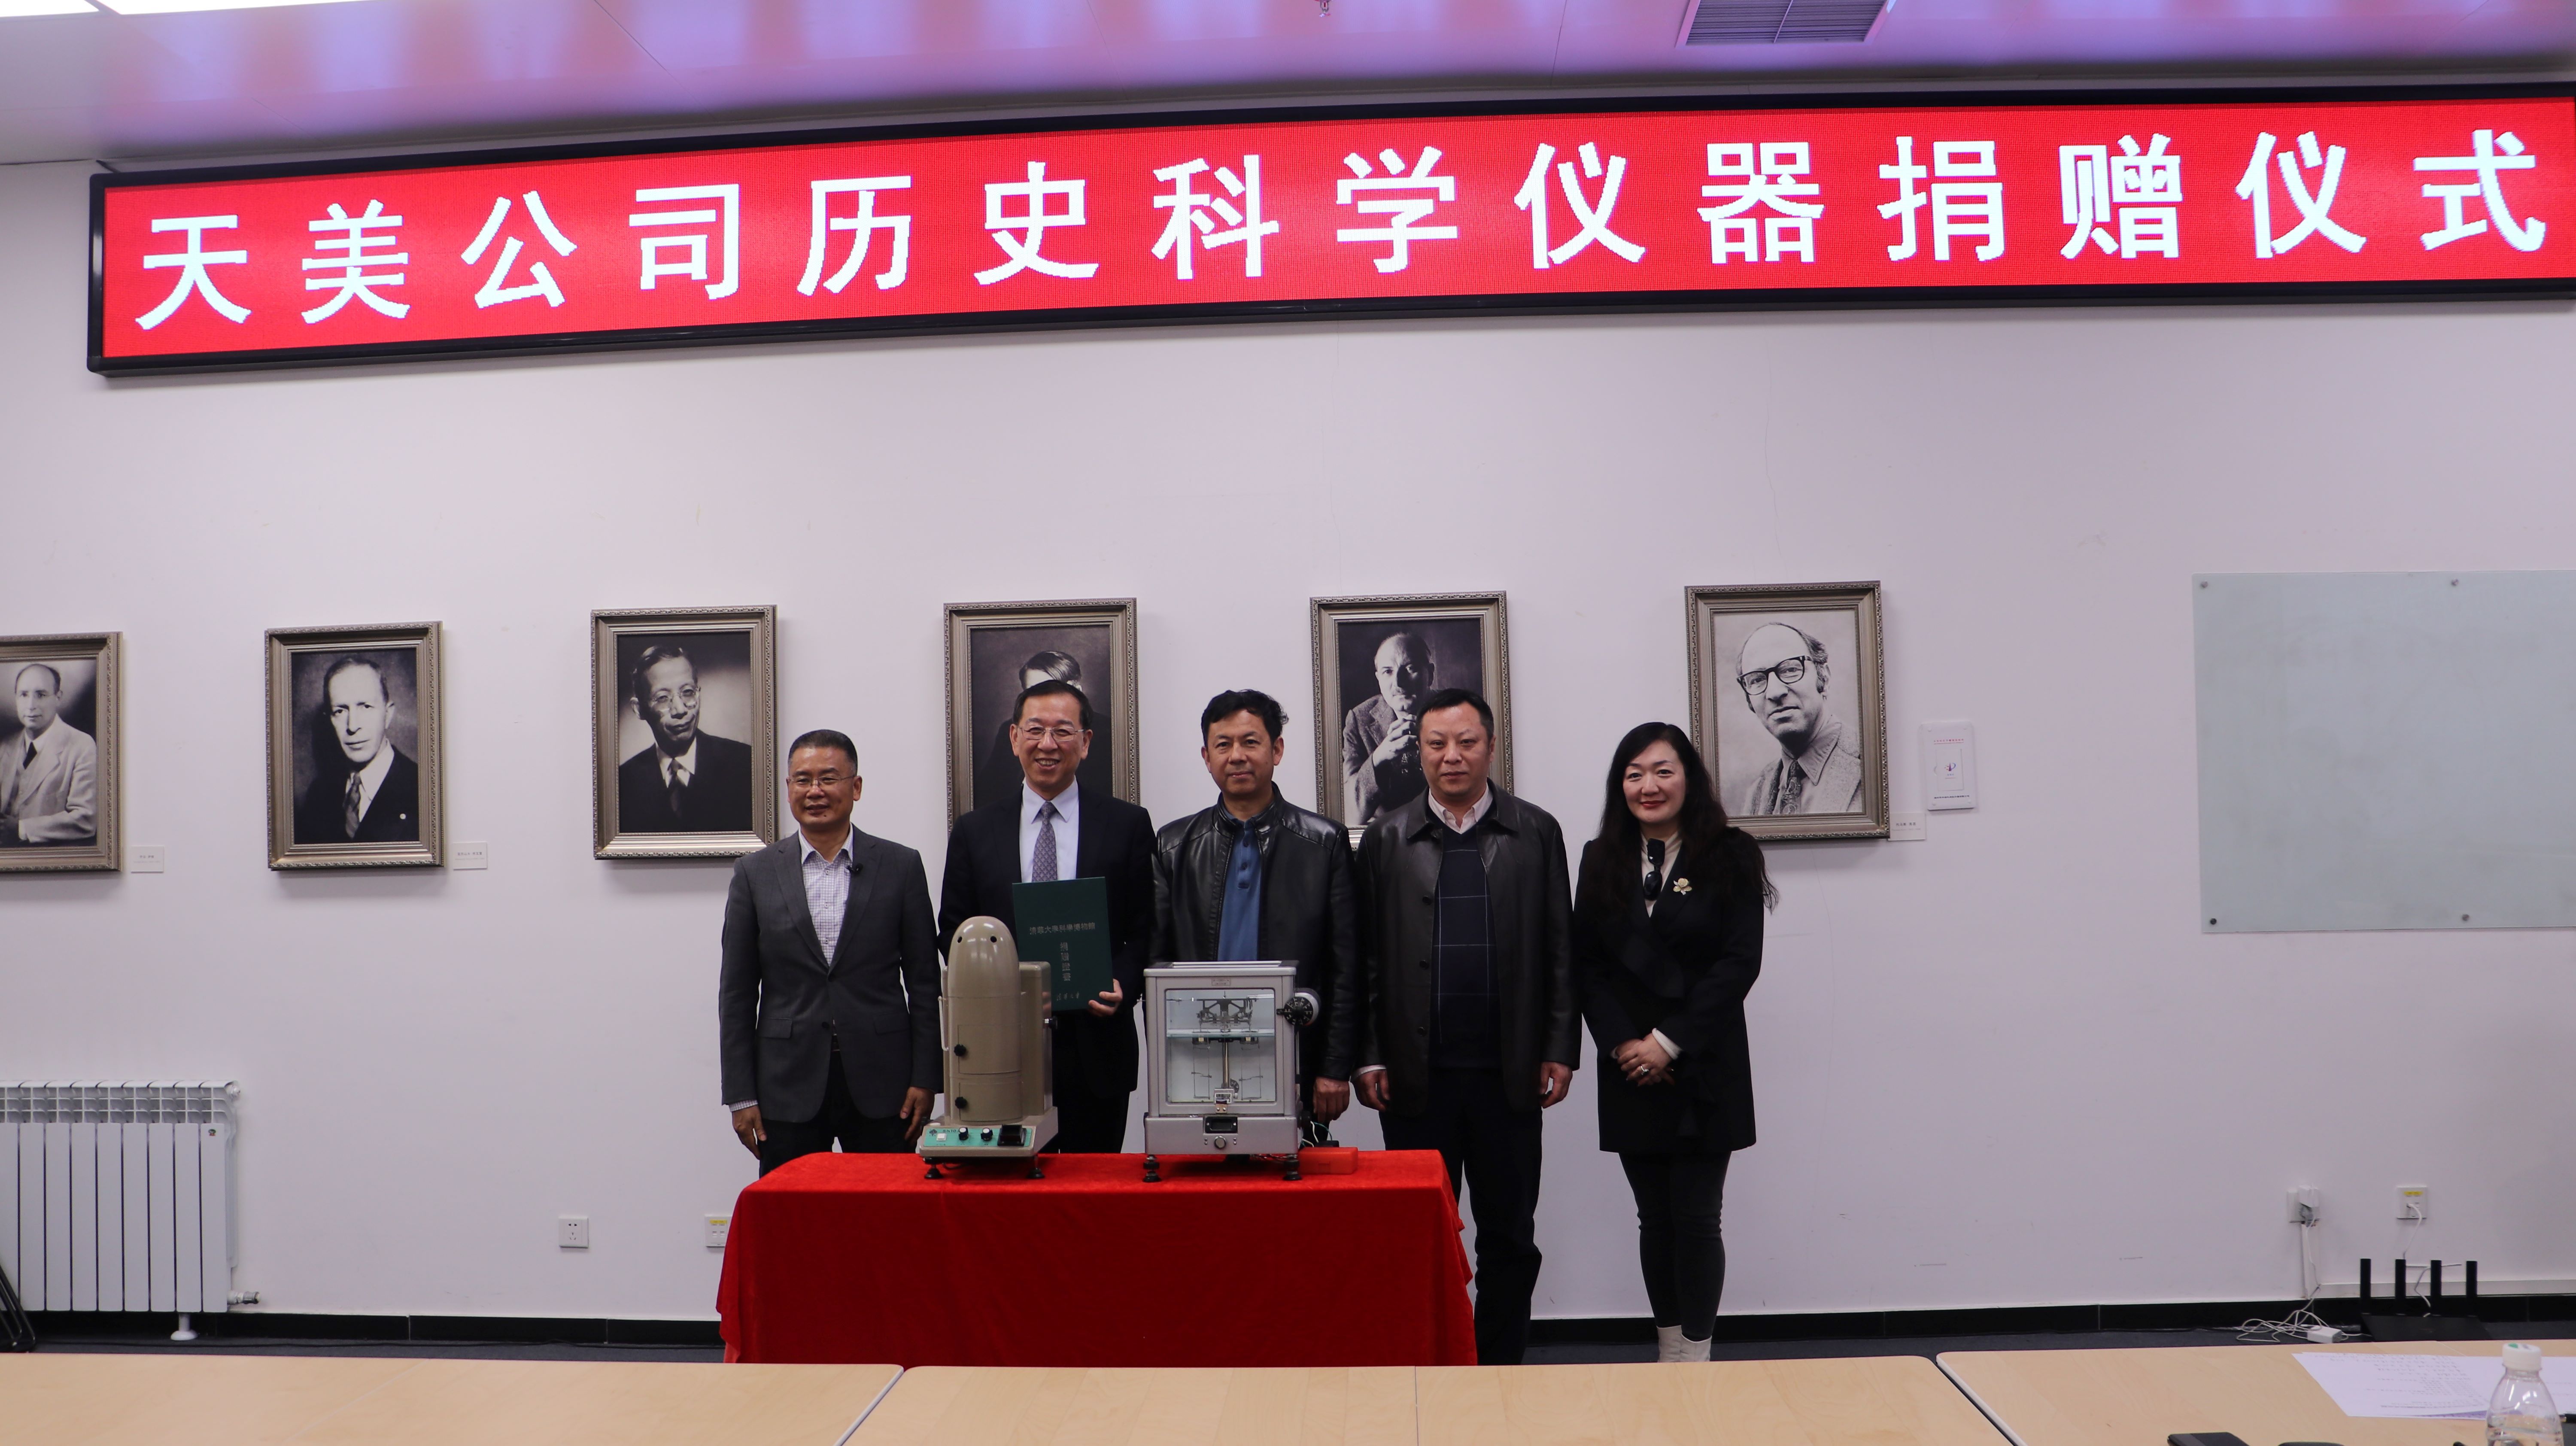 天美公司向清华大学科学博物馆捐赠两台“古董”天平